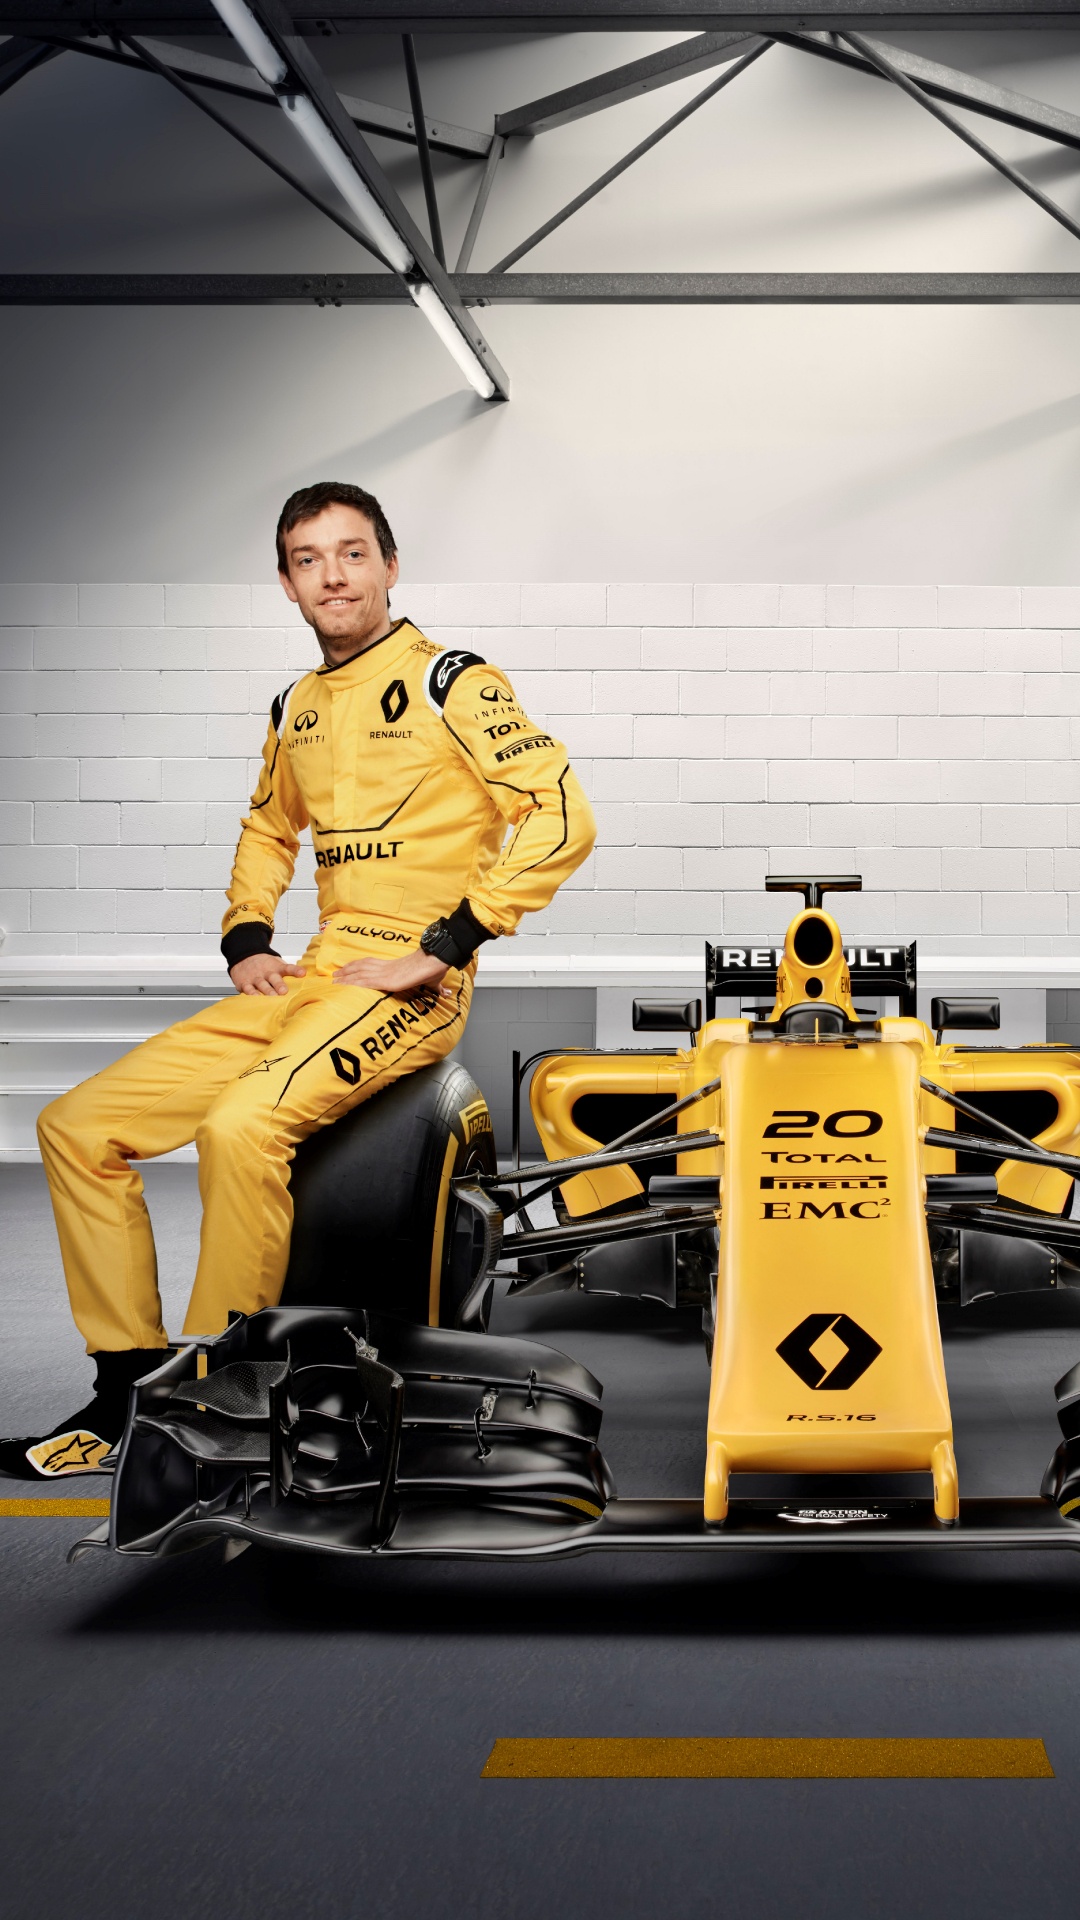 Обои 2016 Формула Один Чемпионат Мира, автогонки, Рено, желтый, команда в разрешении 1080x1920